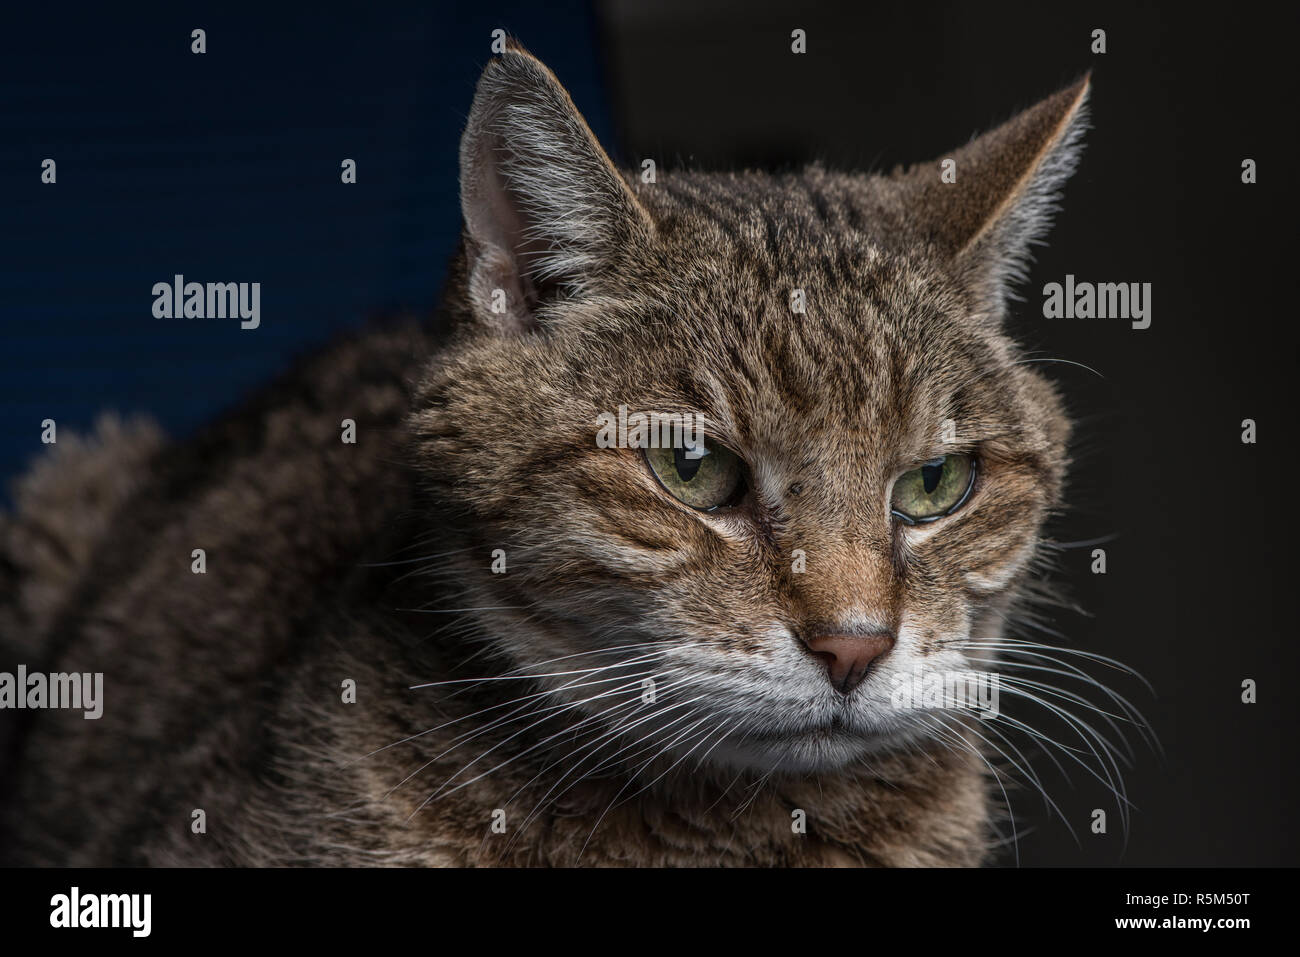 Eine alte gestromte Katze schaut mürrisch und vielleicht scheming über etwas. Stockfoto